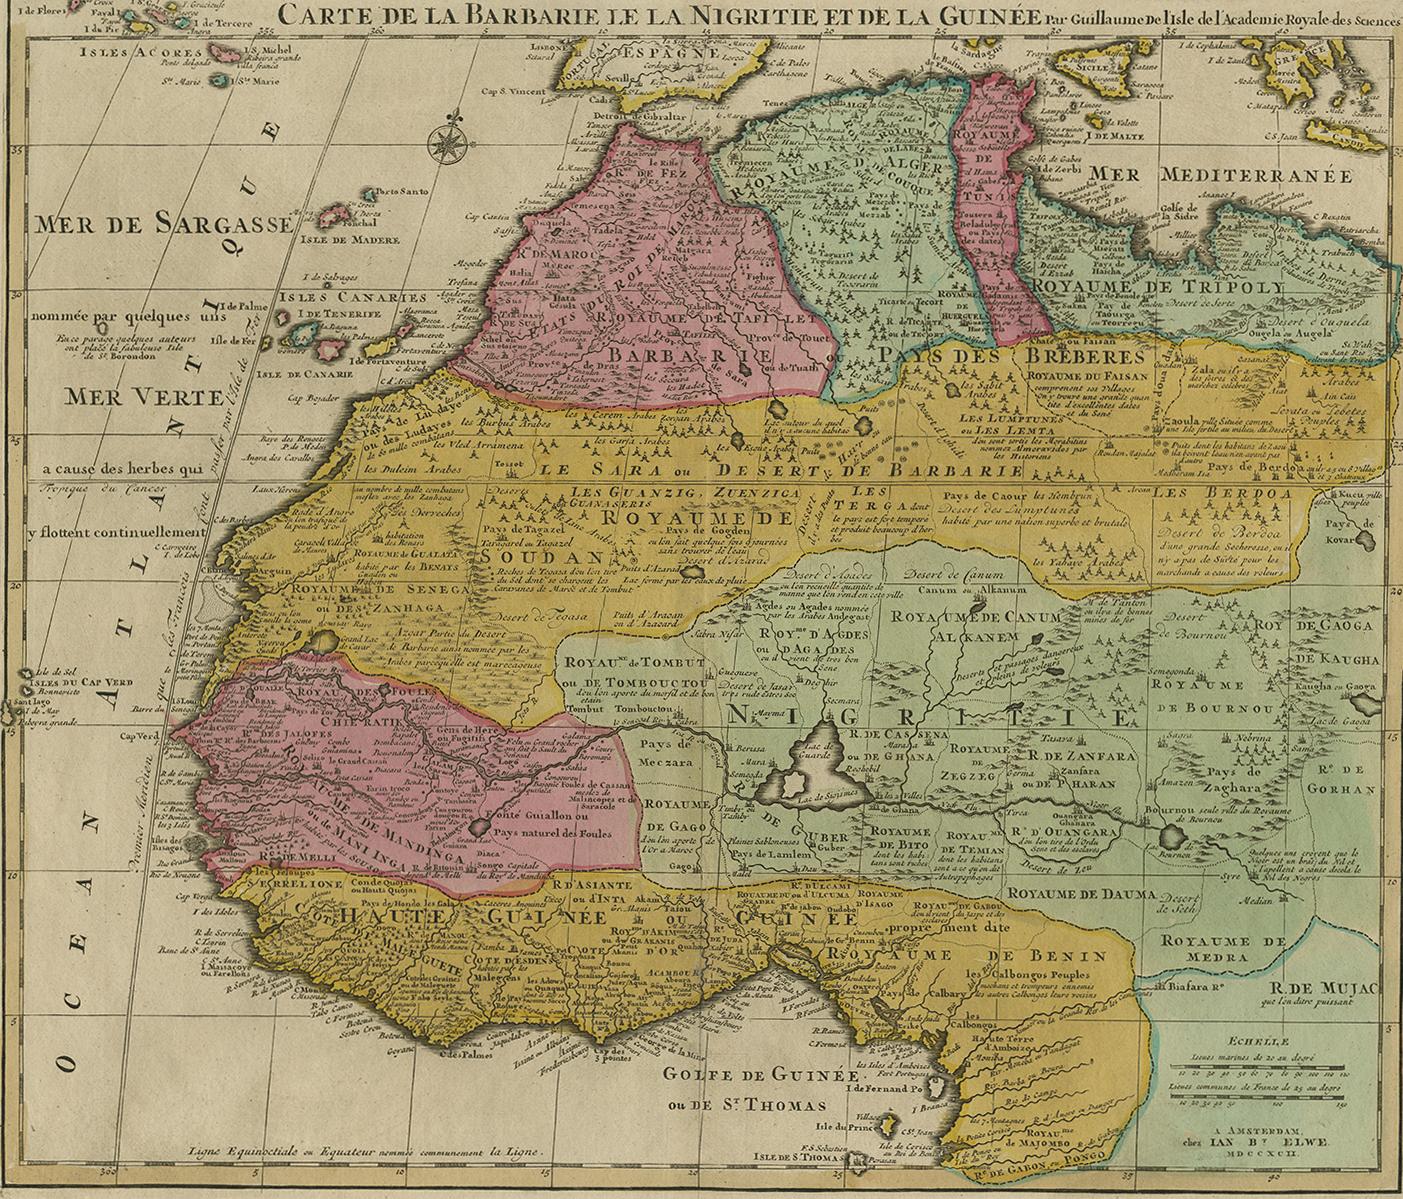 Belle carte richement gravée de l'Afrique du Nord et de l'Ouest, basée sur les cartes antérieures de De L'Isle. Richement annoté tout au long de l'ouvrage et avec d'excellents détails régionaux. Trop de détails à décrire. La qualité de la gravure